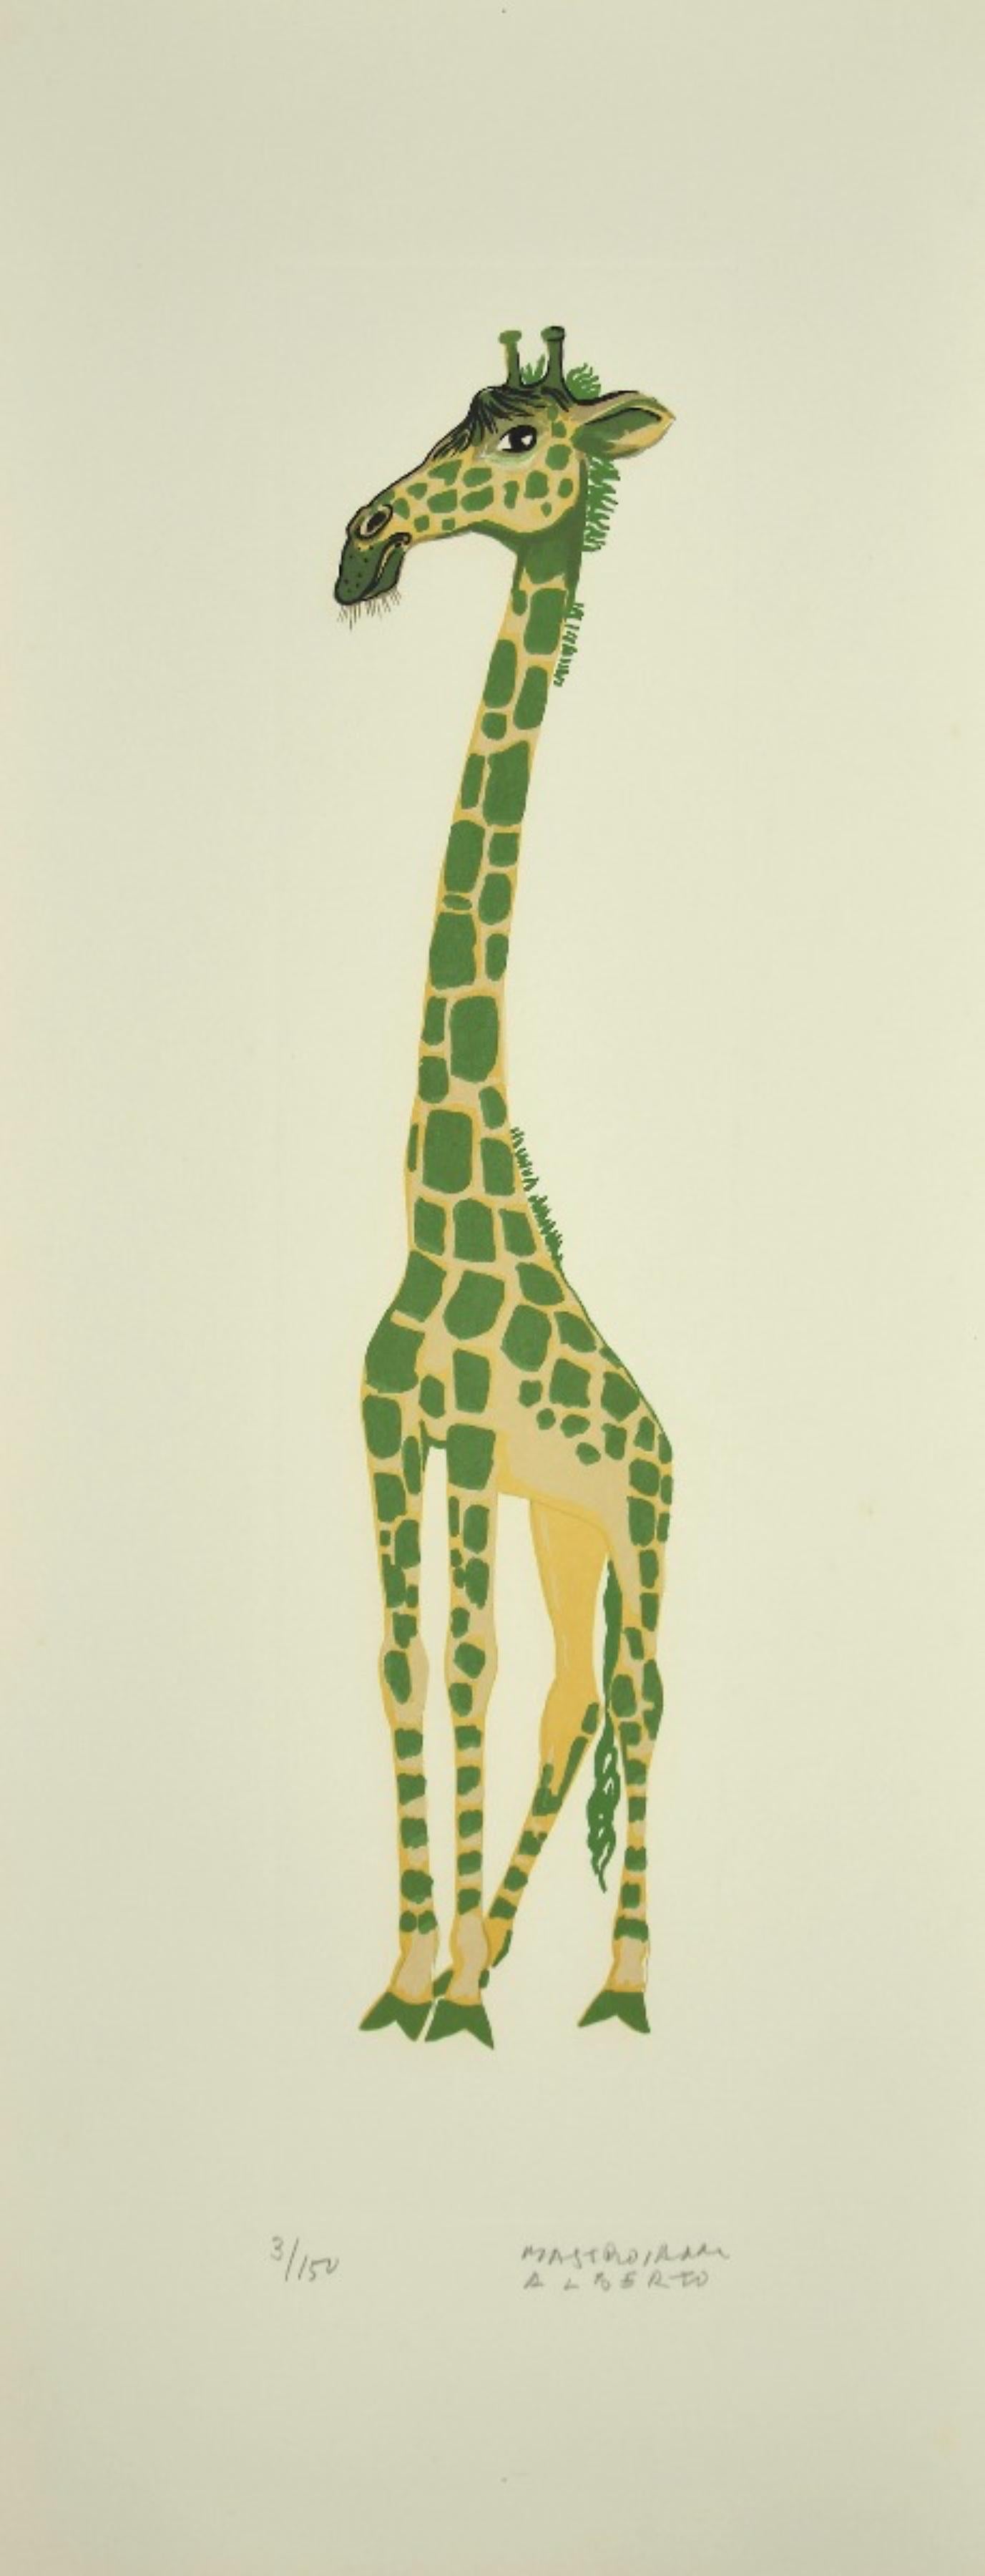 Girafe - Lithograph by Alberto Mastroianni - 1970s